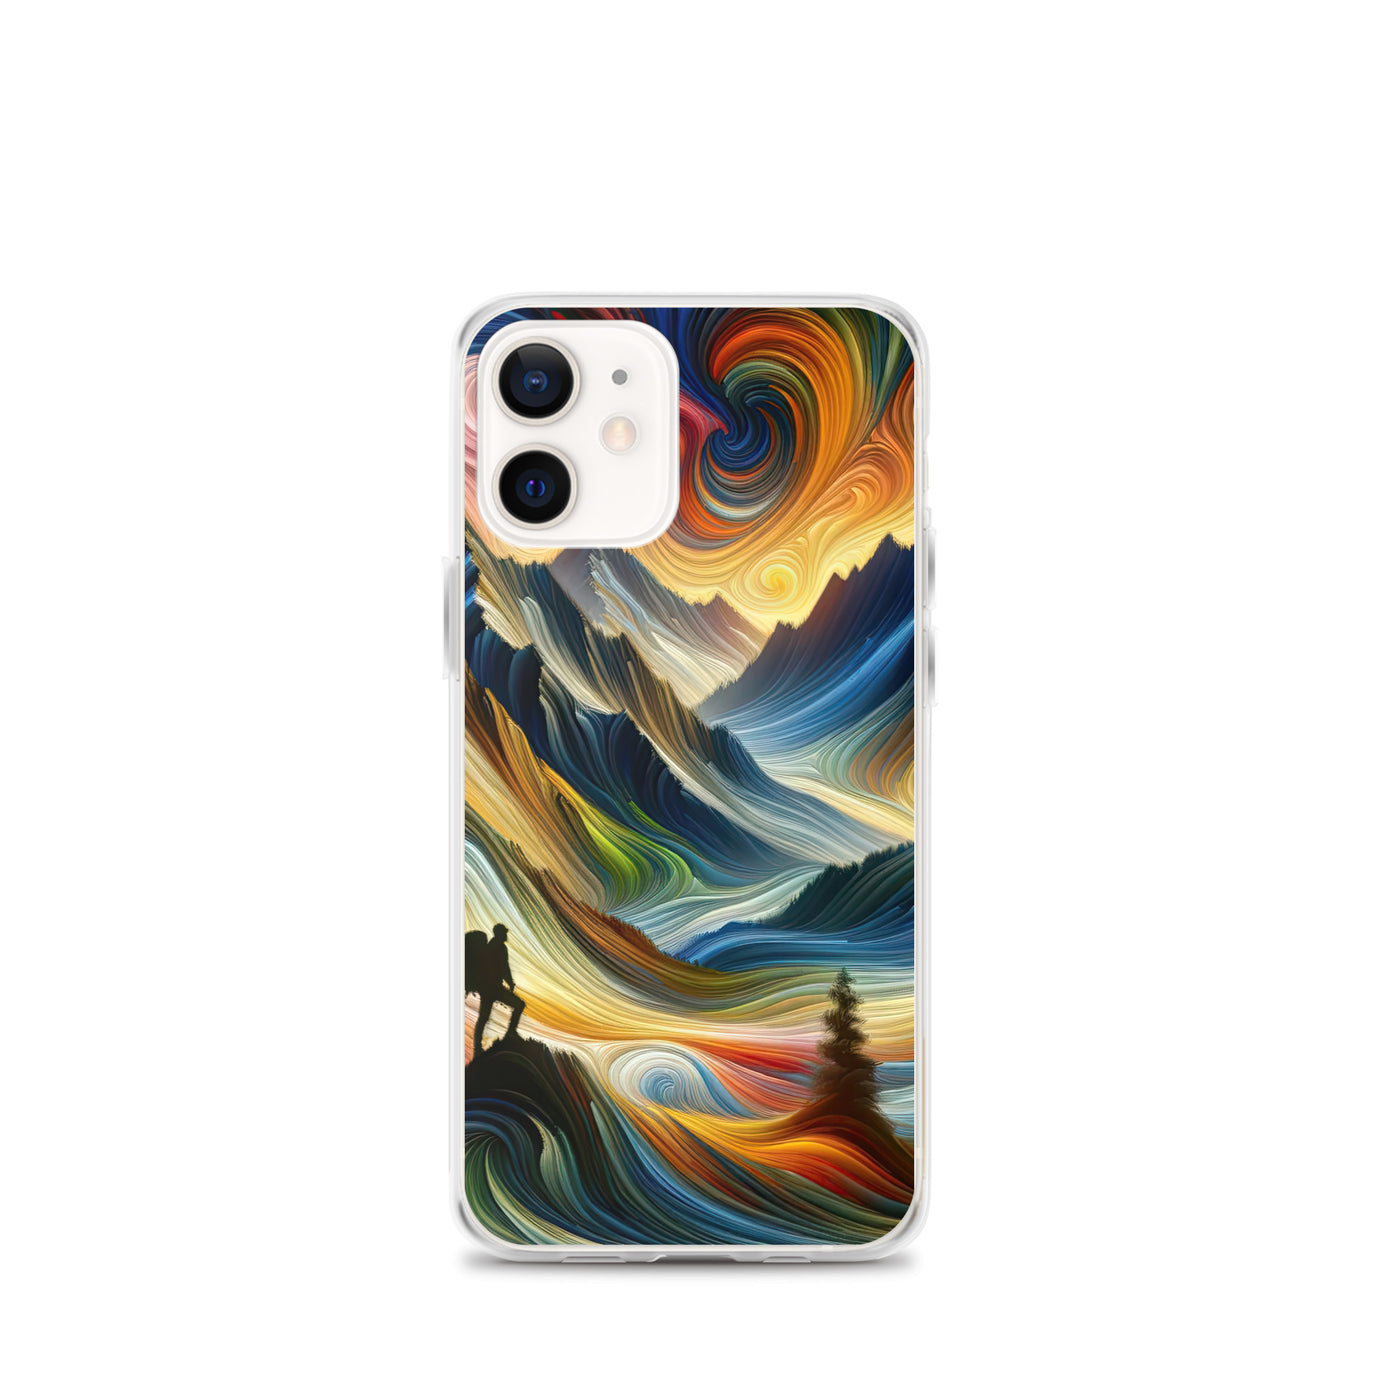 Abstraktes Kunstgemälde der Alpen mit wirbelnden, lebendigen Farben und dynamischen Mustern. Wanderer Silhouette - iPhone Schutzhülle (durchsichtig) wandern xxx yyy zzz iPhone 12 mini